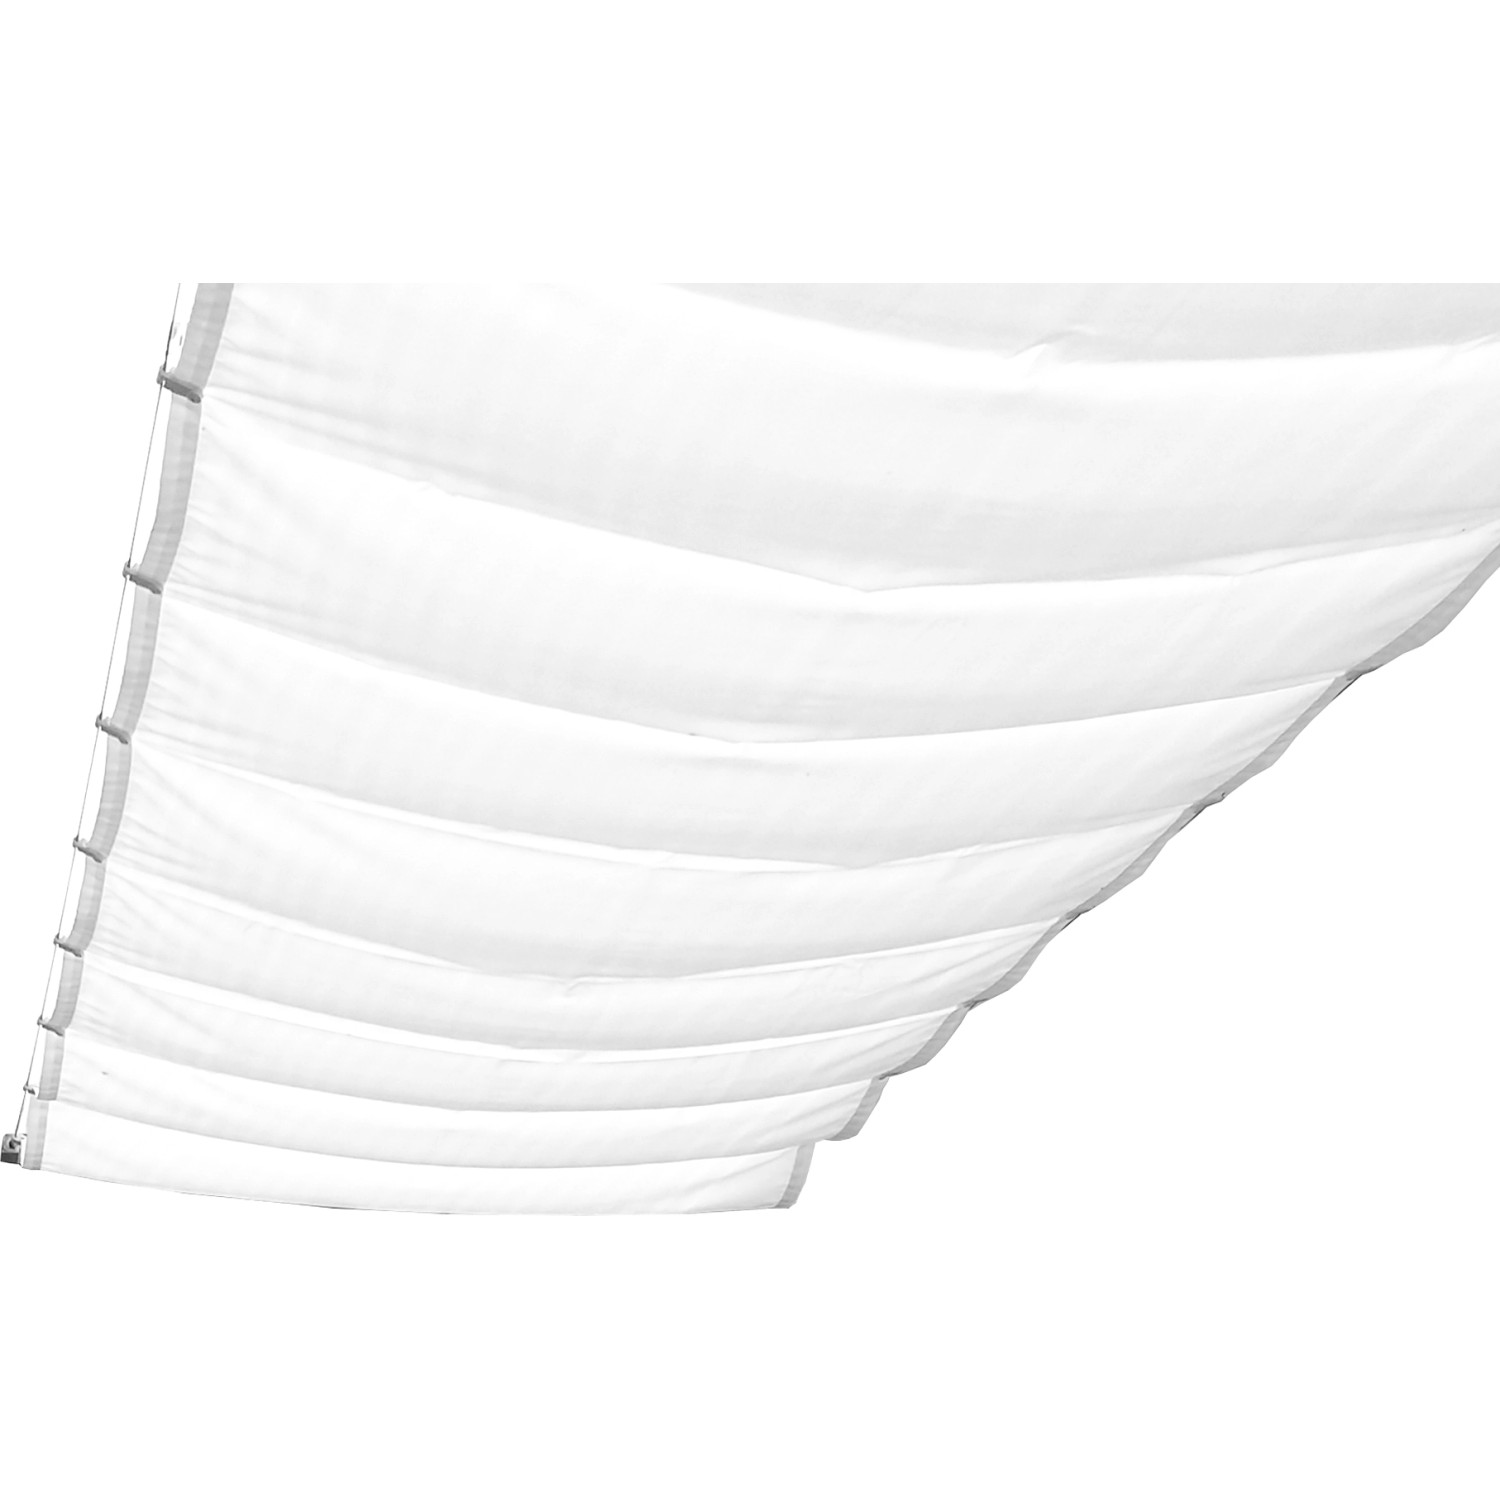 Peddy Shield Sonnensegel 330 cm x 61 cm Uni Weiß von Peddy Shield